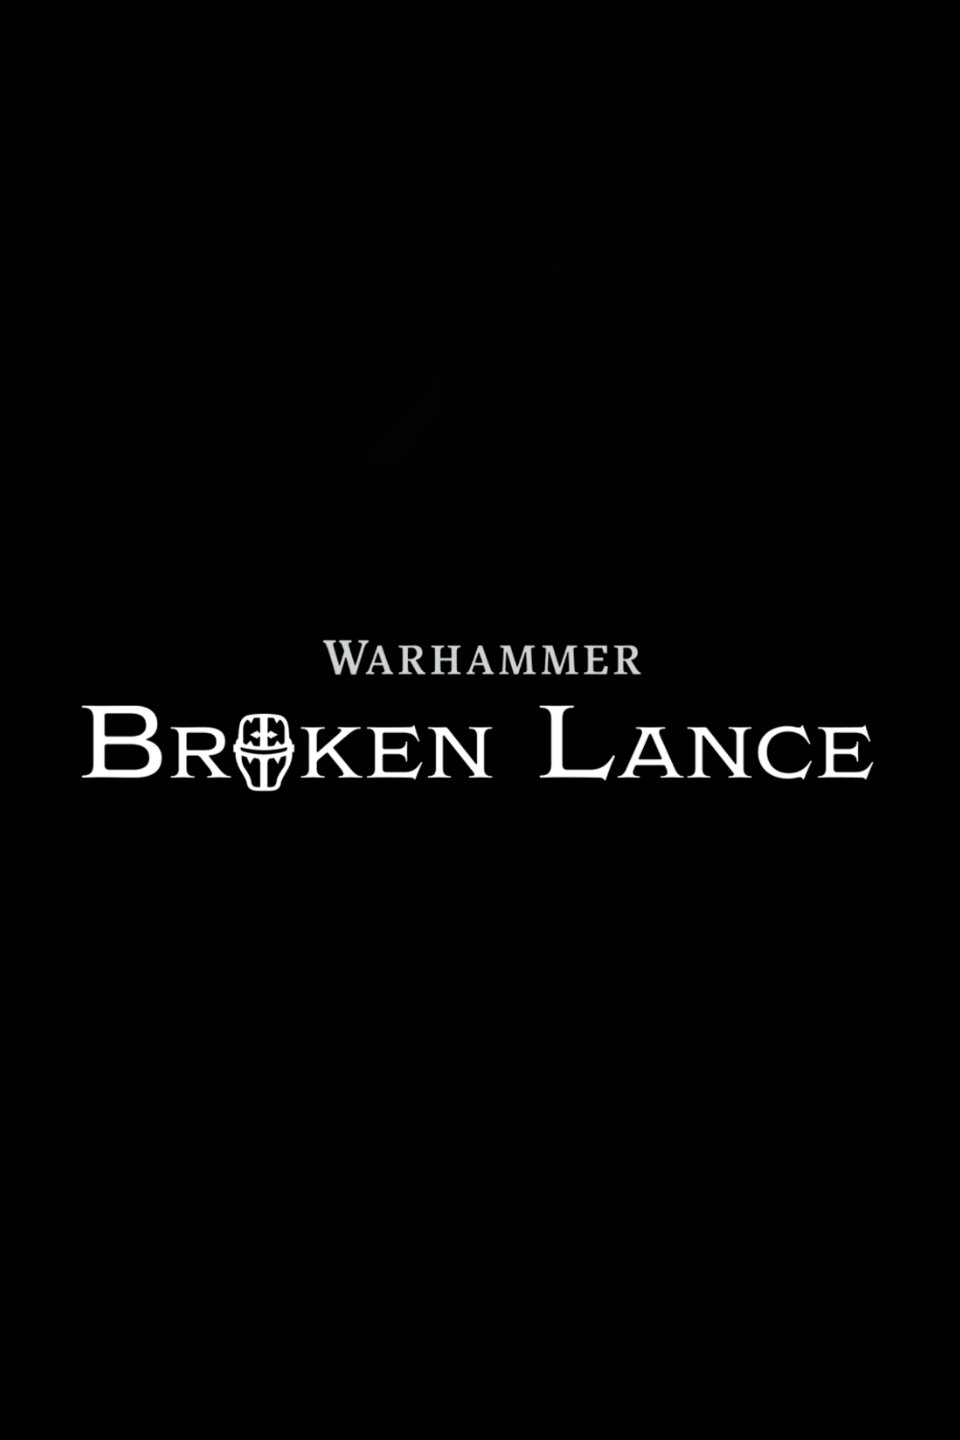 Broken lance warhammer